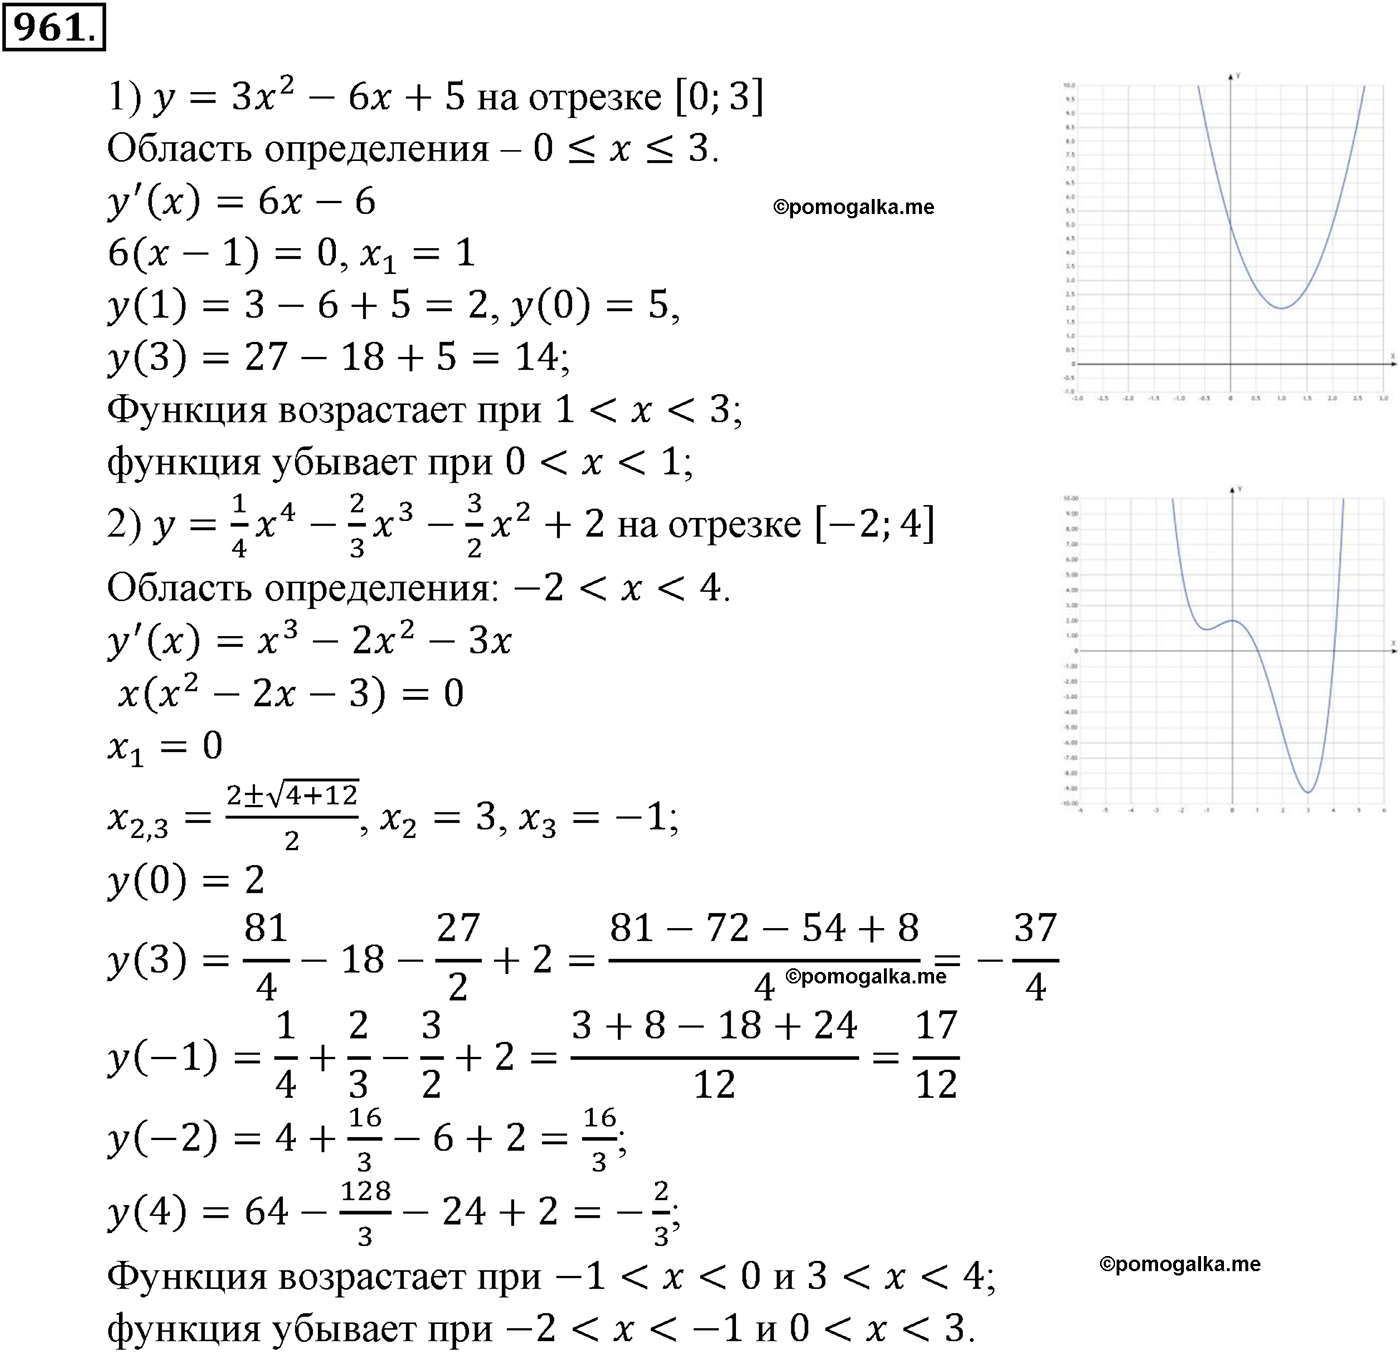 разбор задачи №961 по алгебре за 10-11 класс из учебника Алимова, Колягина